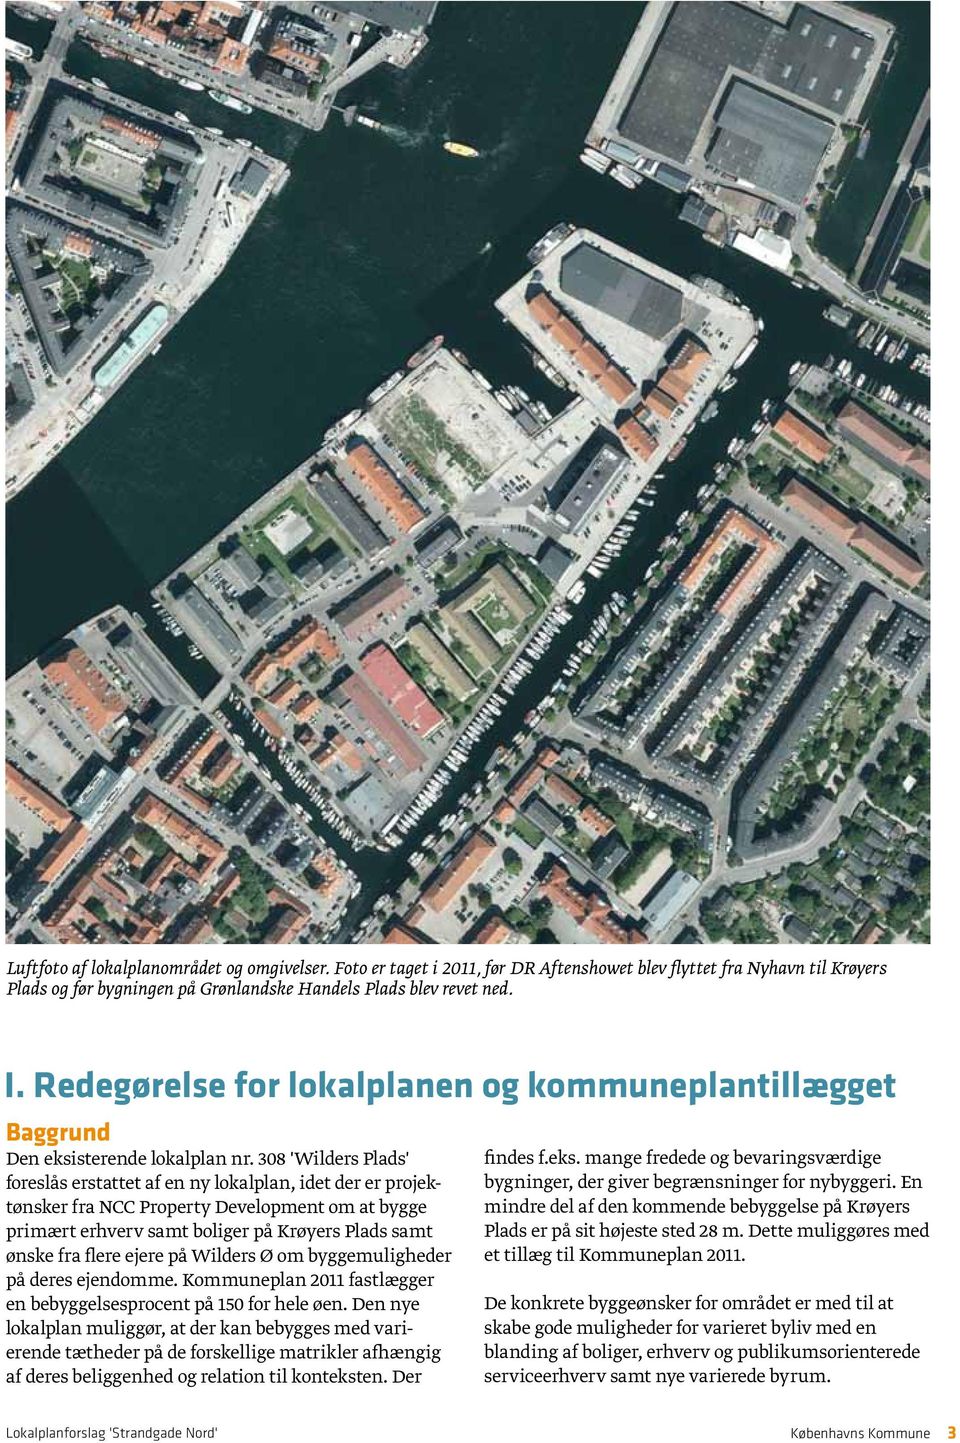 308 'Wilders Plads' foreslås erstattet af en ny lokalplan, idet der er projektønsker fra NCC Property Development om at bygge primært erhverv samt boliger på Krøyers Plads samt ønske fra flere ejere